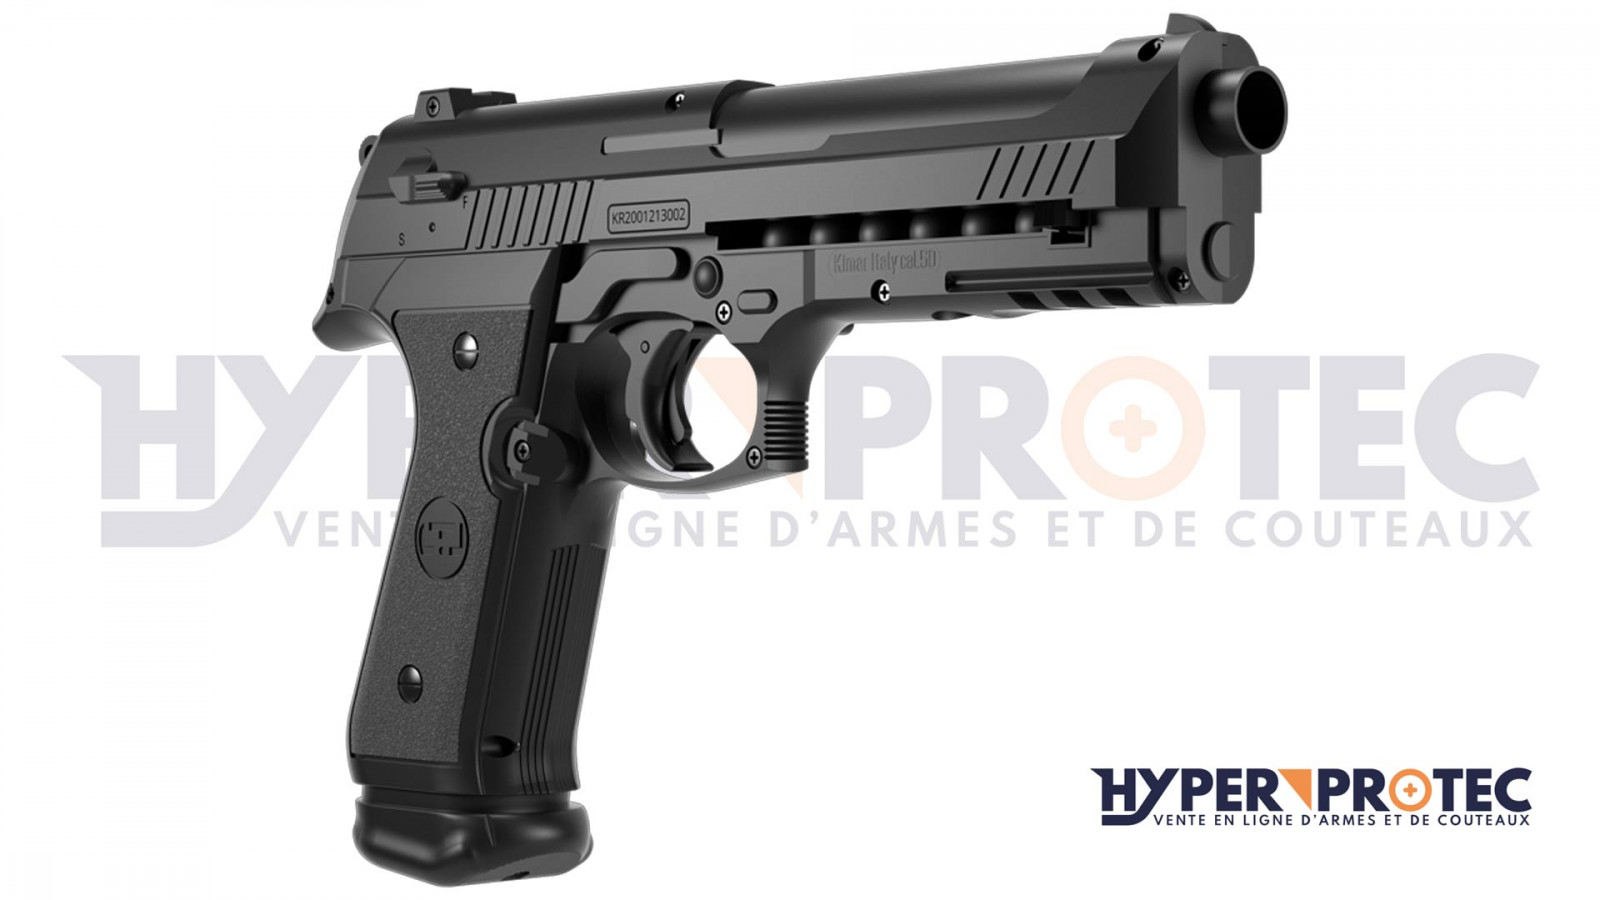 Pack pistolet de défense LTL Alfa 1.50 caoutchouc (18 joules)